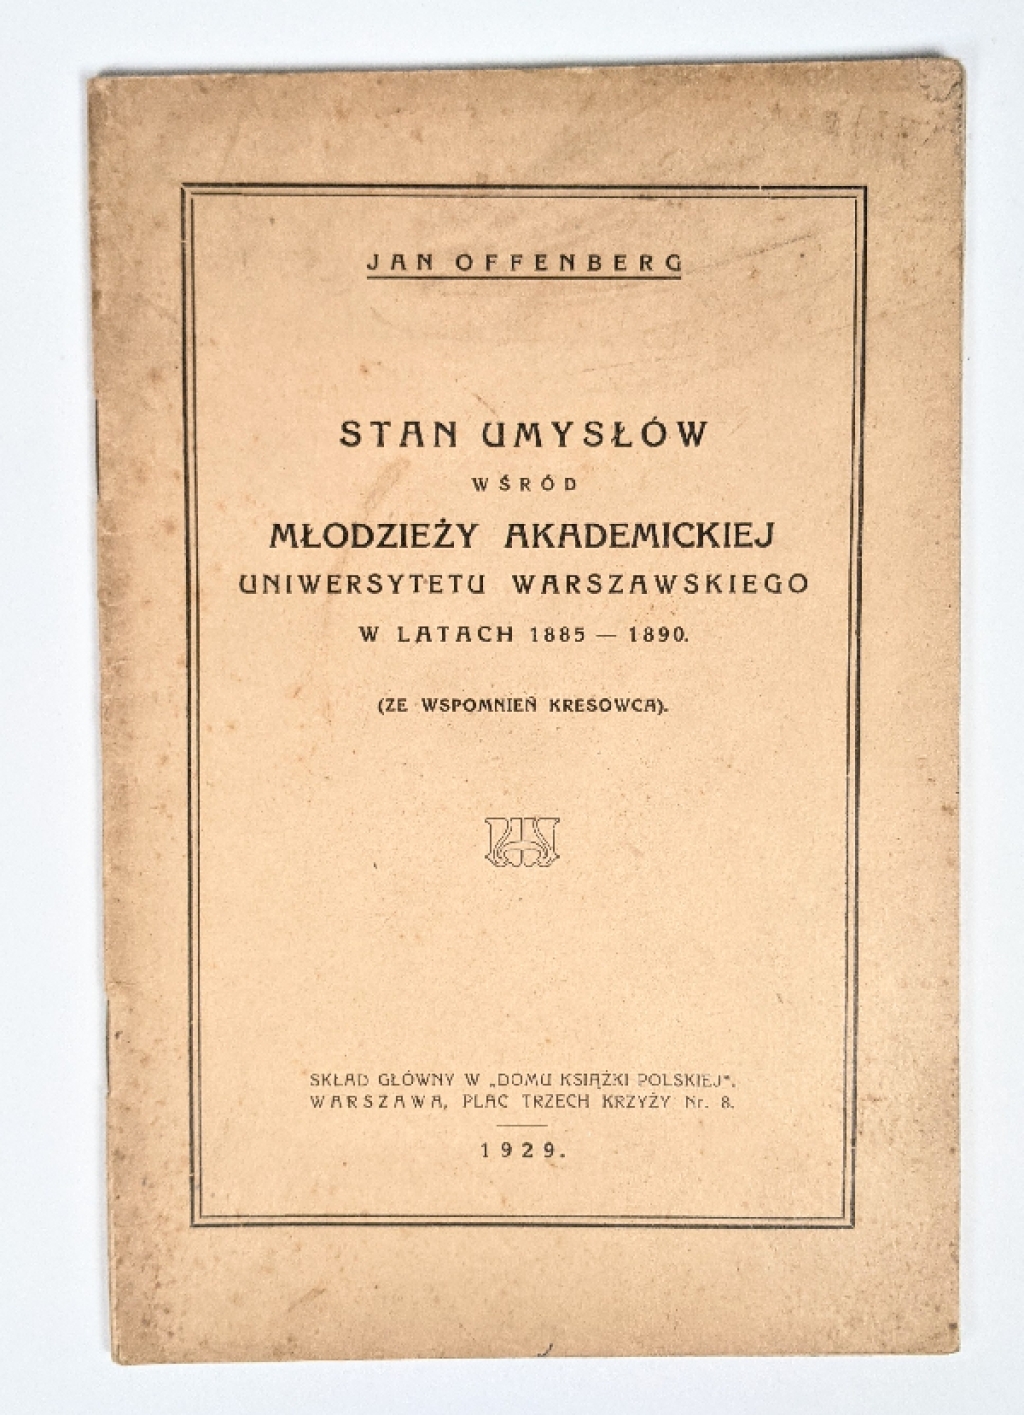 Stan umysłów wśród młodzieży akademickiej Uniwersytetu Warszawskiego w latach 1885-1890. (Ze wspomnień kresowca)